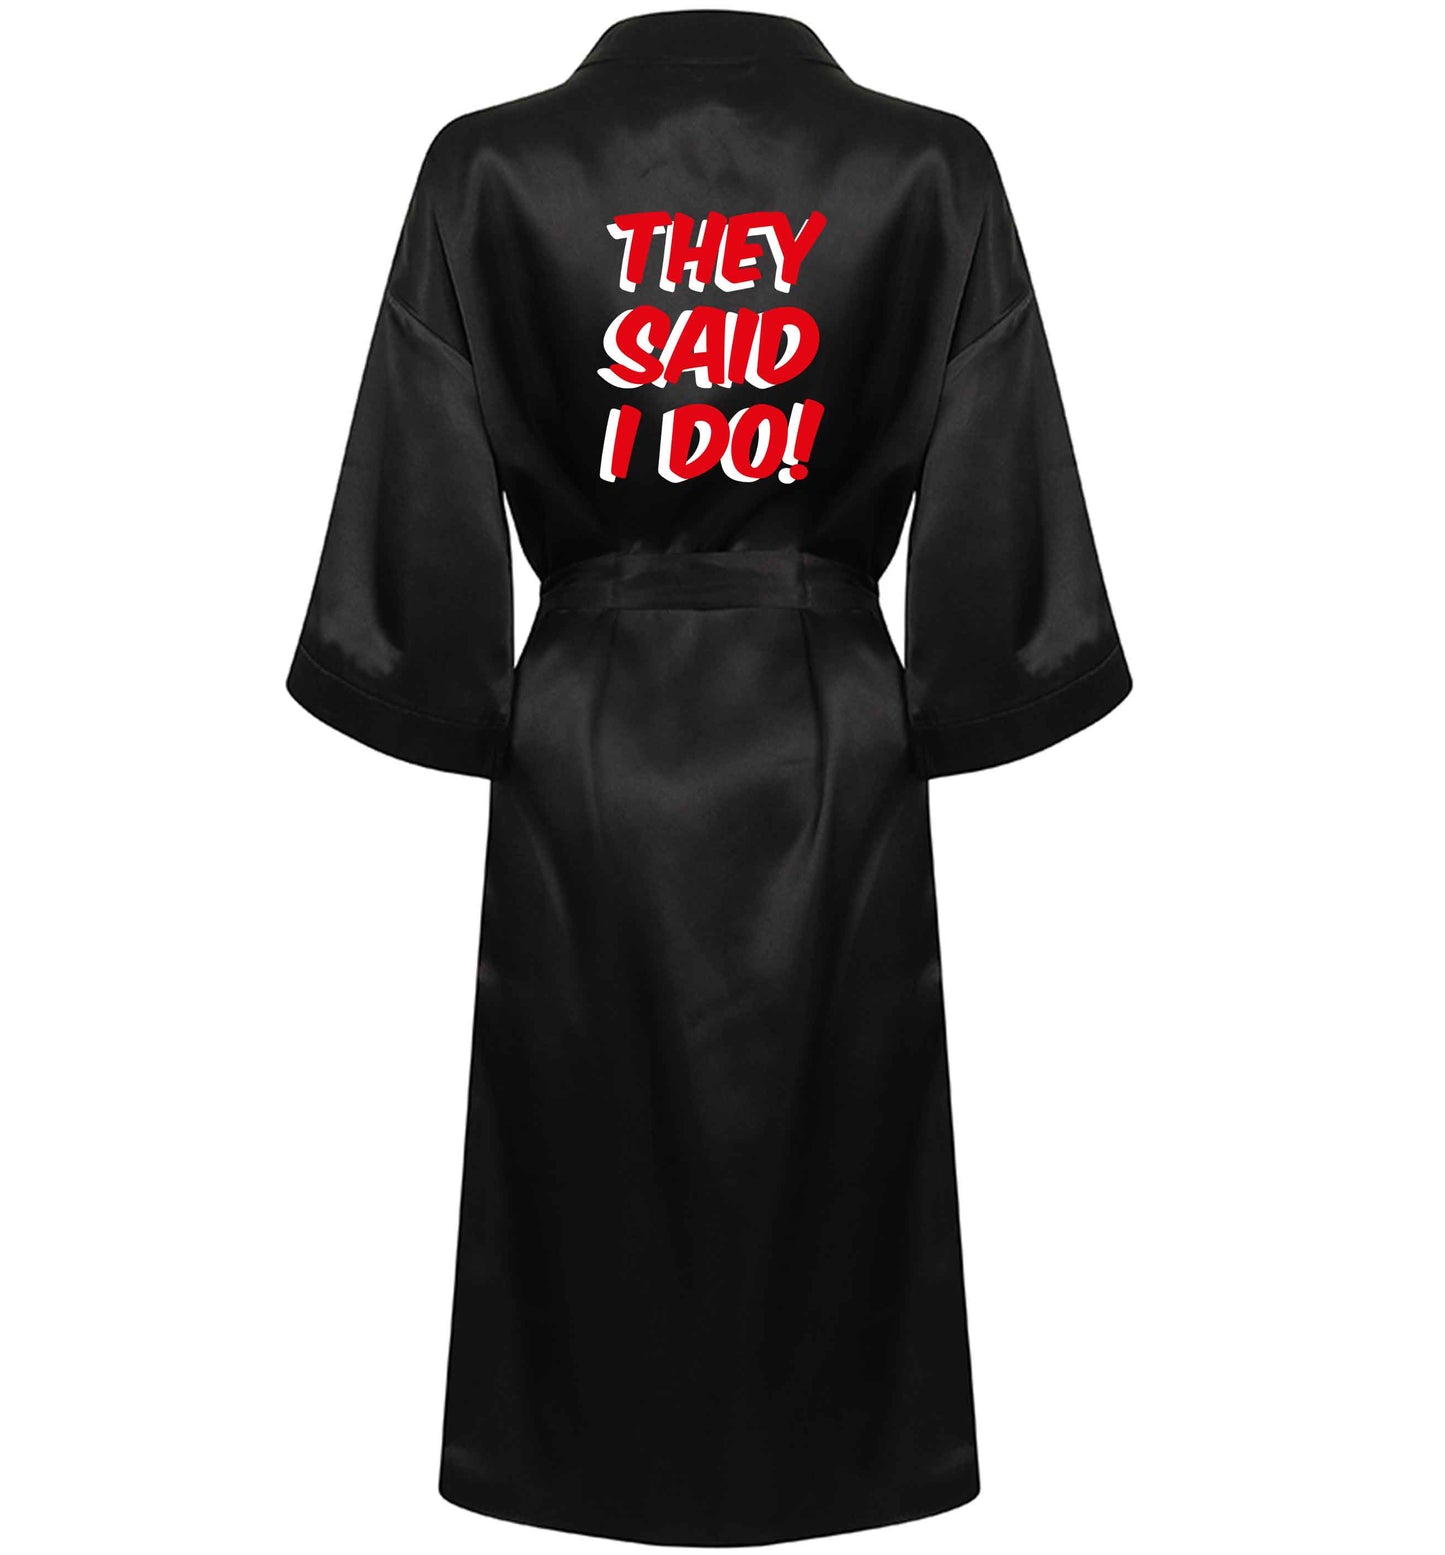 They said I do XL/XXL black ladies dressing  gown size 16/18